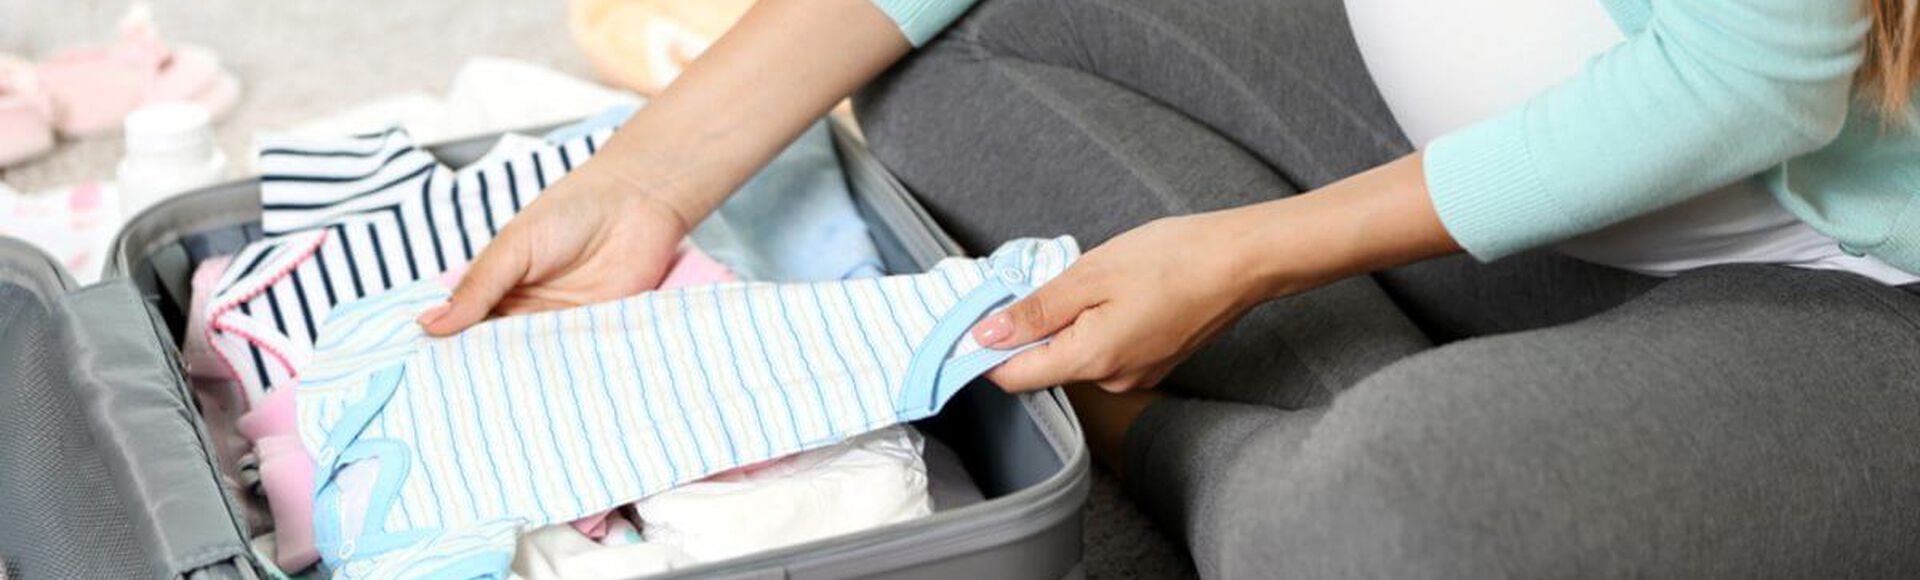 Qué llevar en la maleta de maternidad al hospital? – Gabis